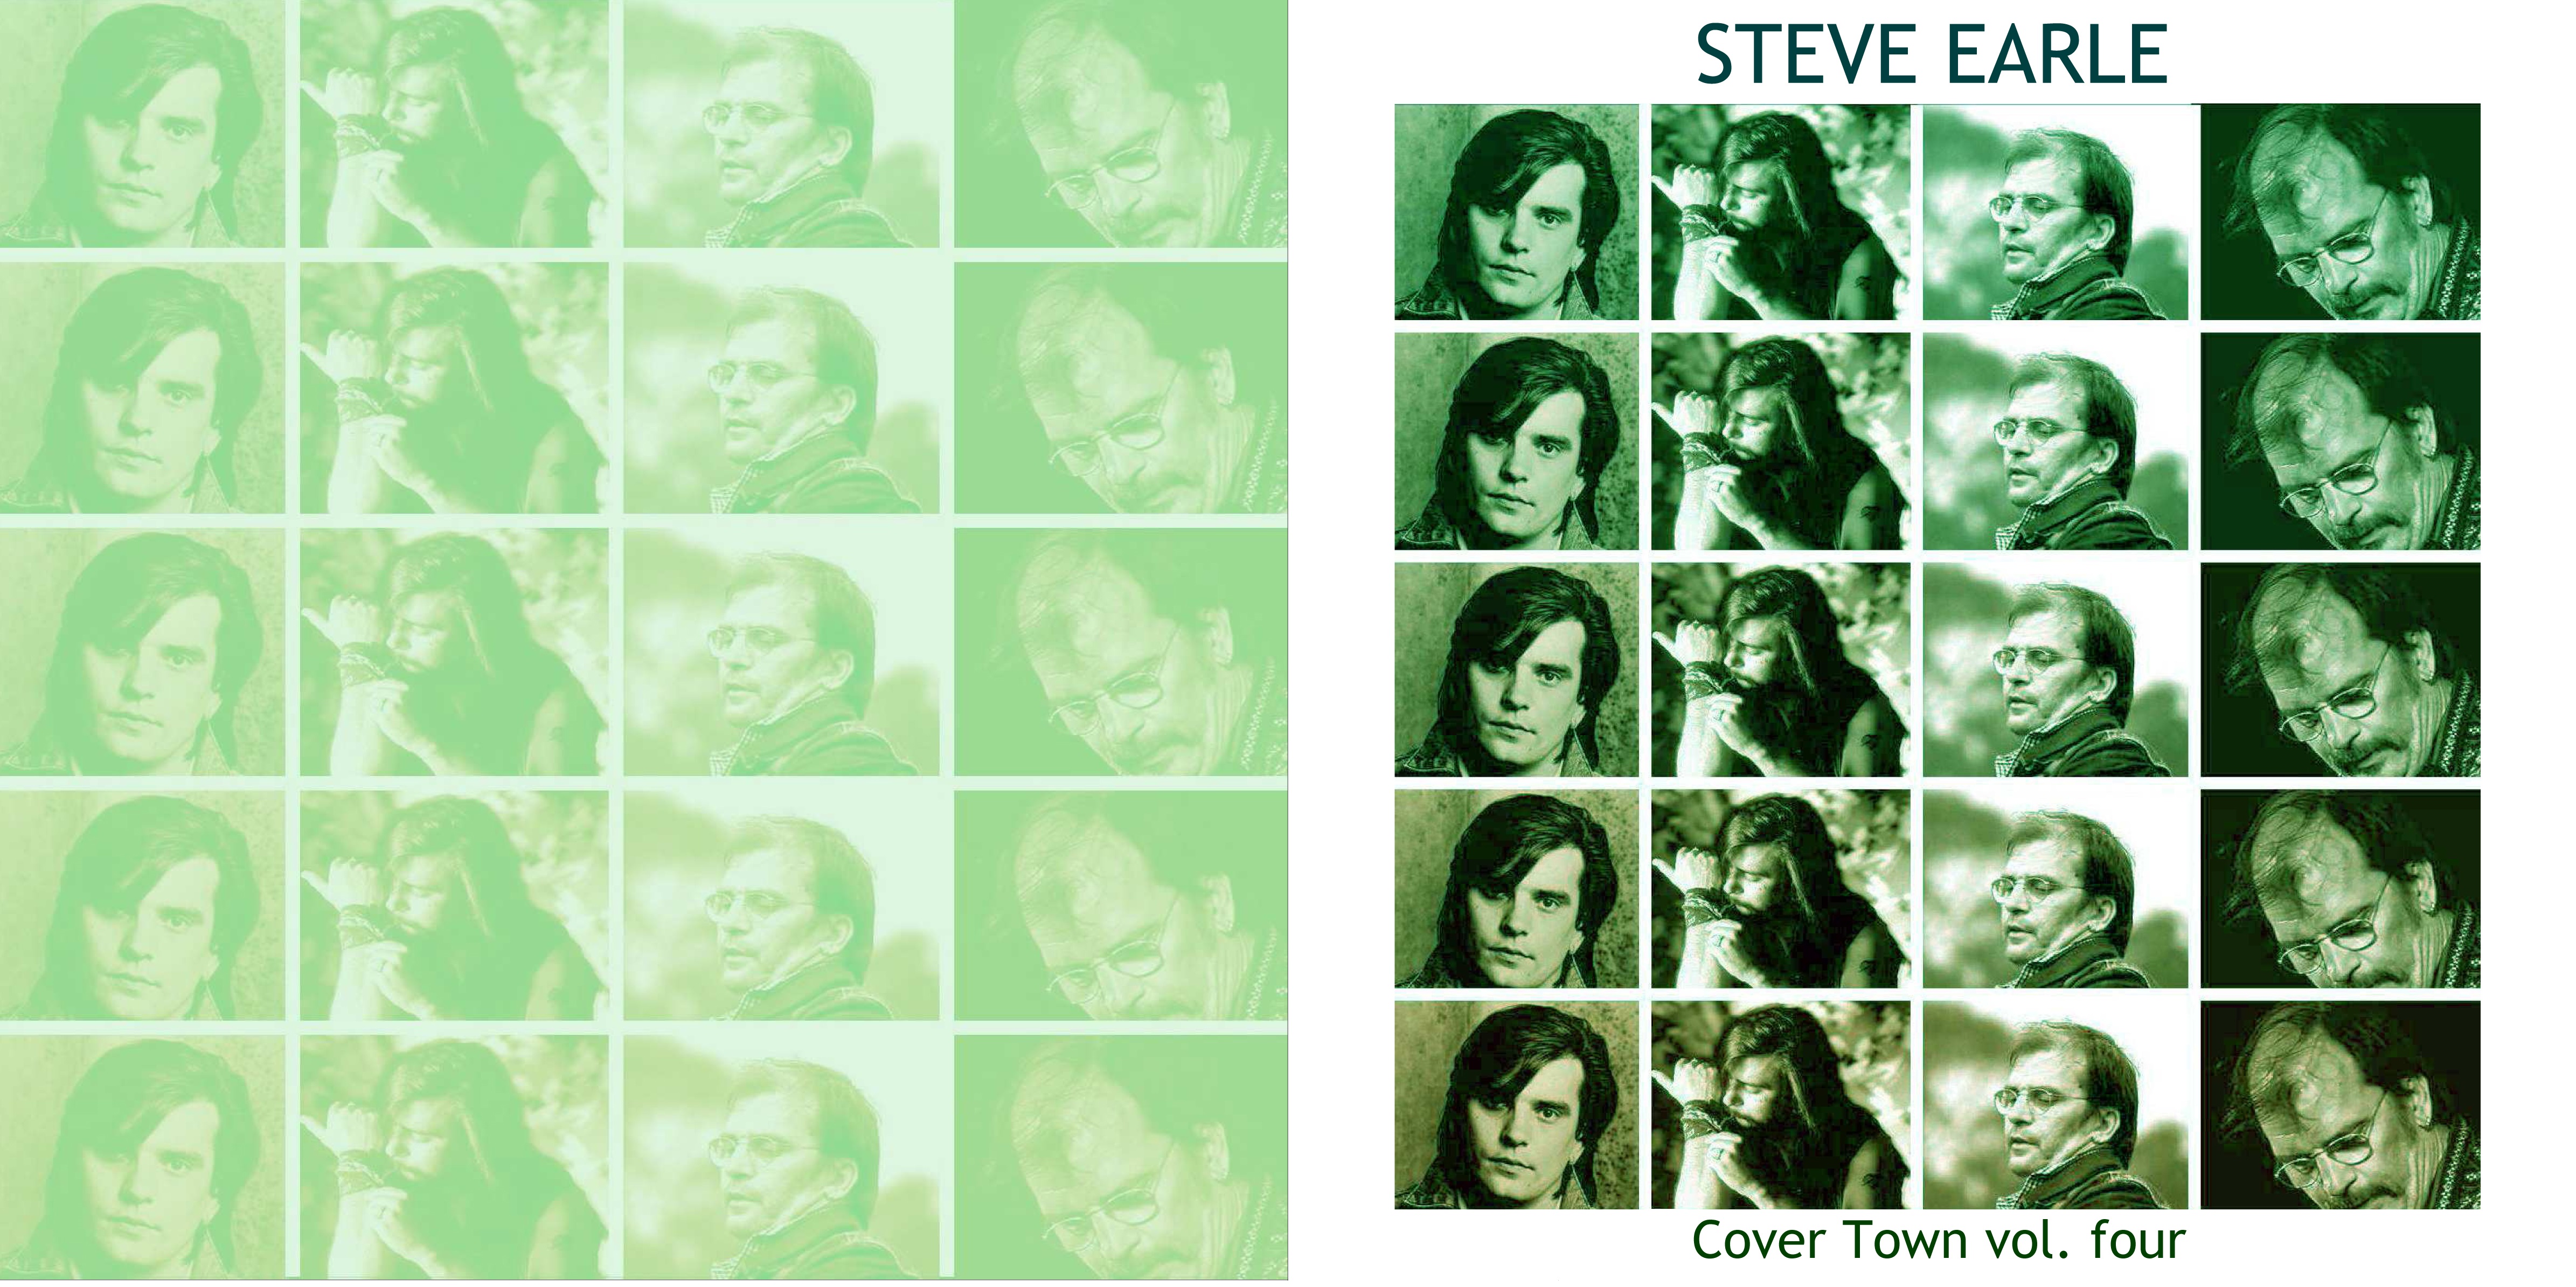 SteveEarle1987-2008CovertownVolume4 (2).jpg